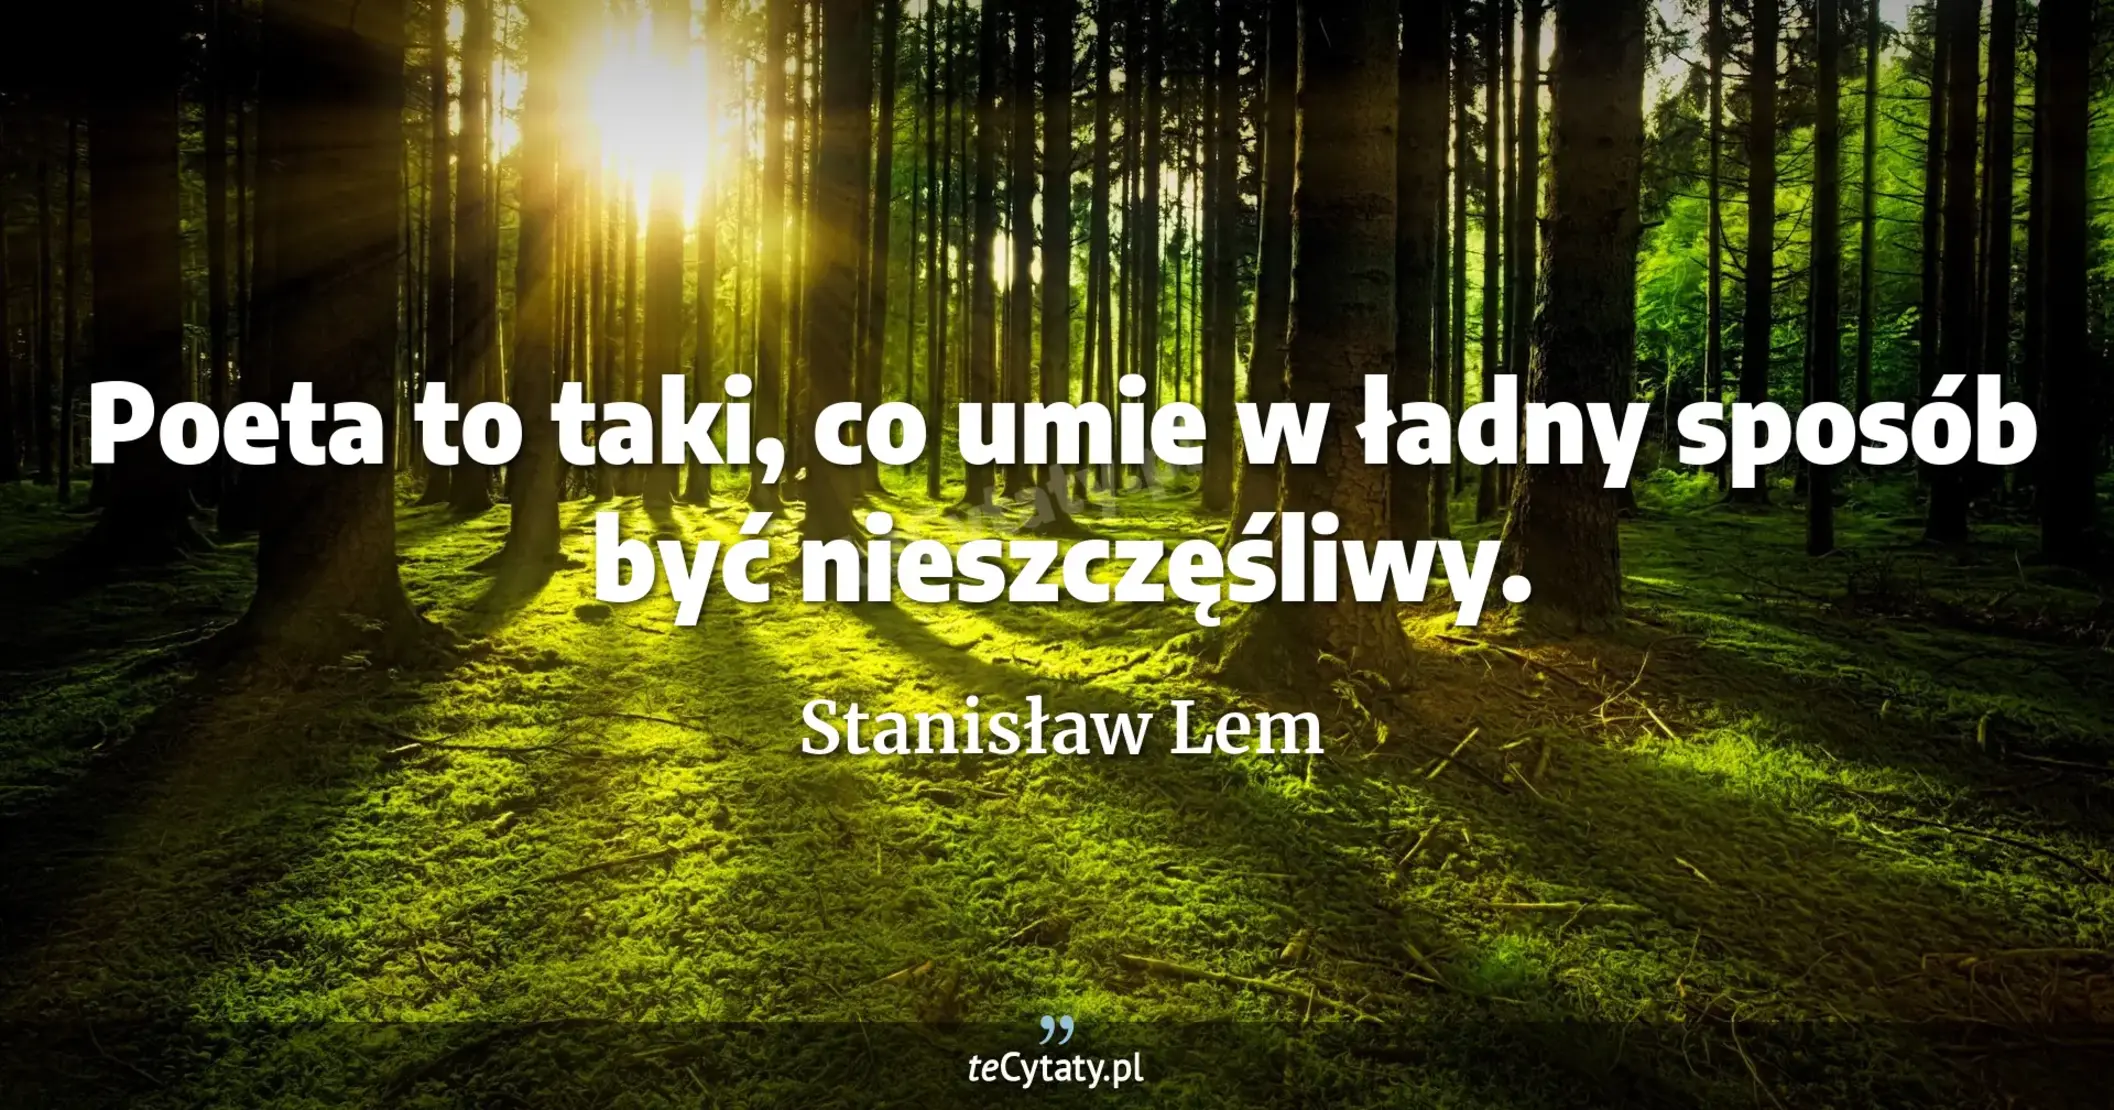 Poeta to taki, co umie w ładny sposób być nieszczęśliwy. - Stanisław Lem